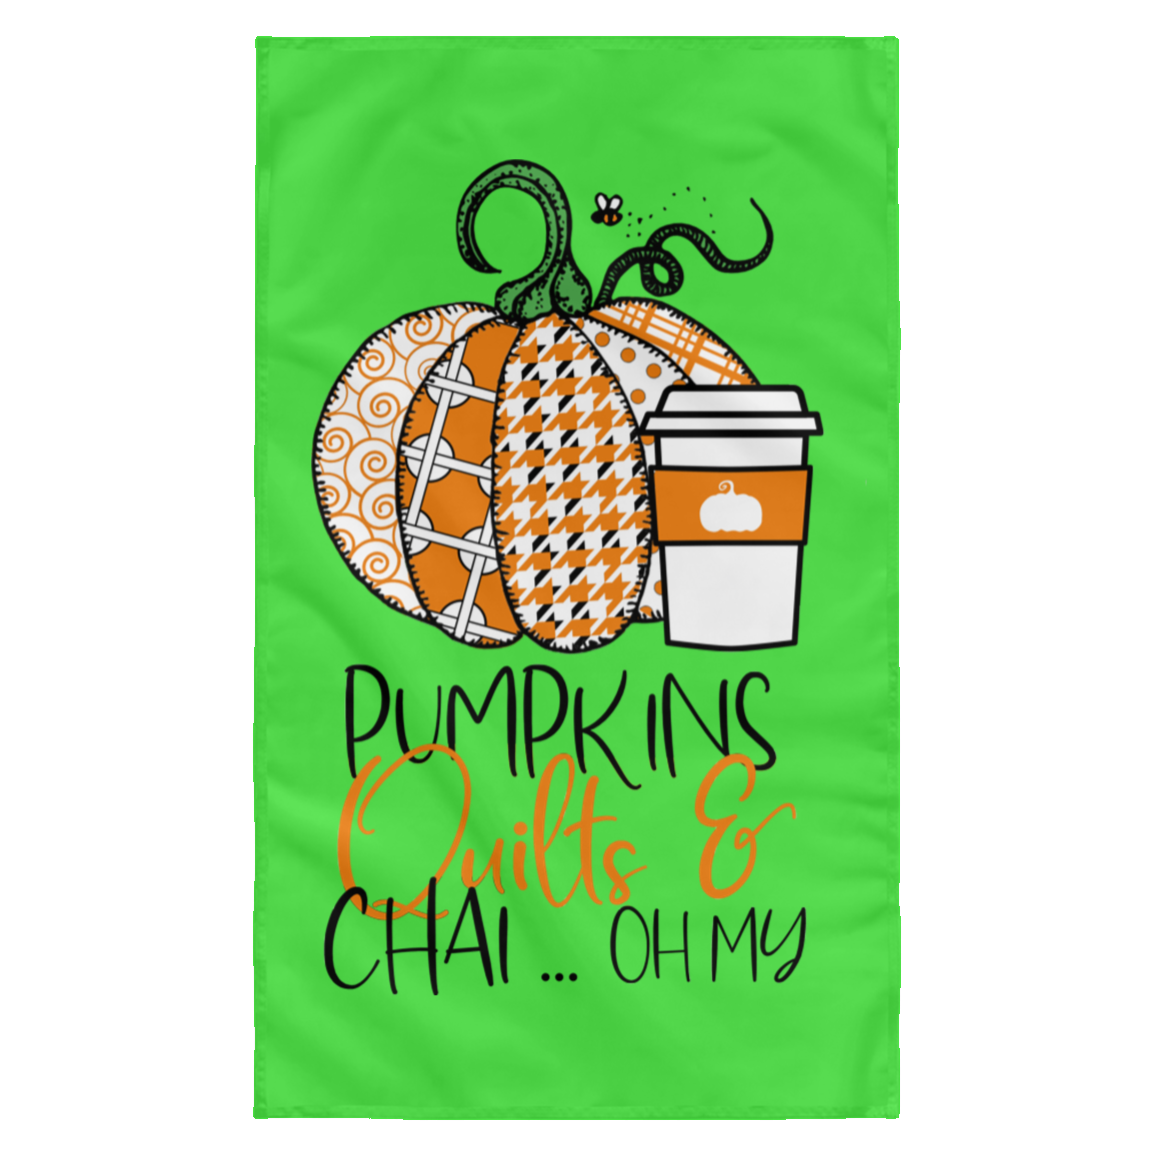 Pumpkins, Quilts & Chai Wall Flag